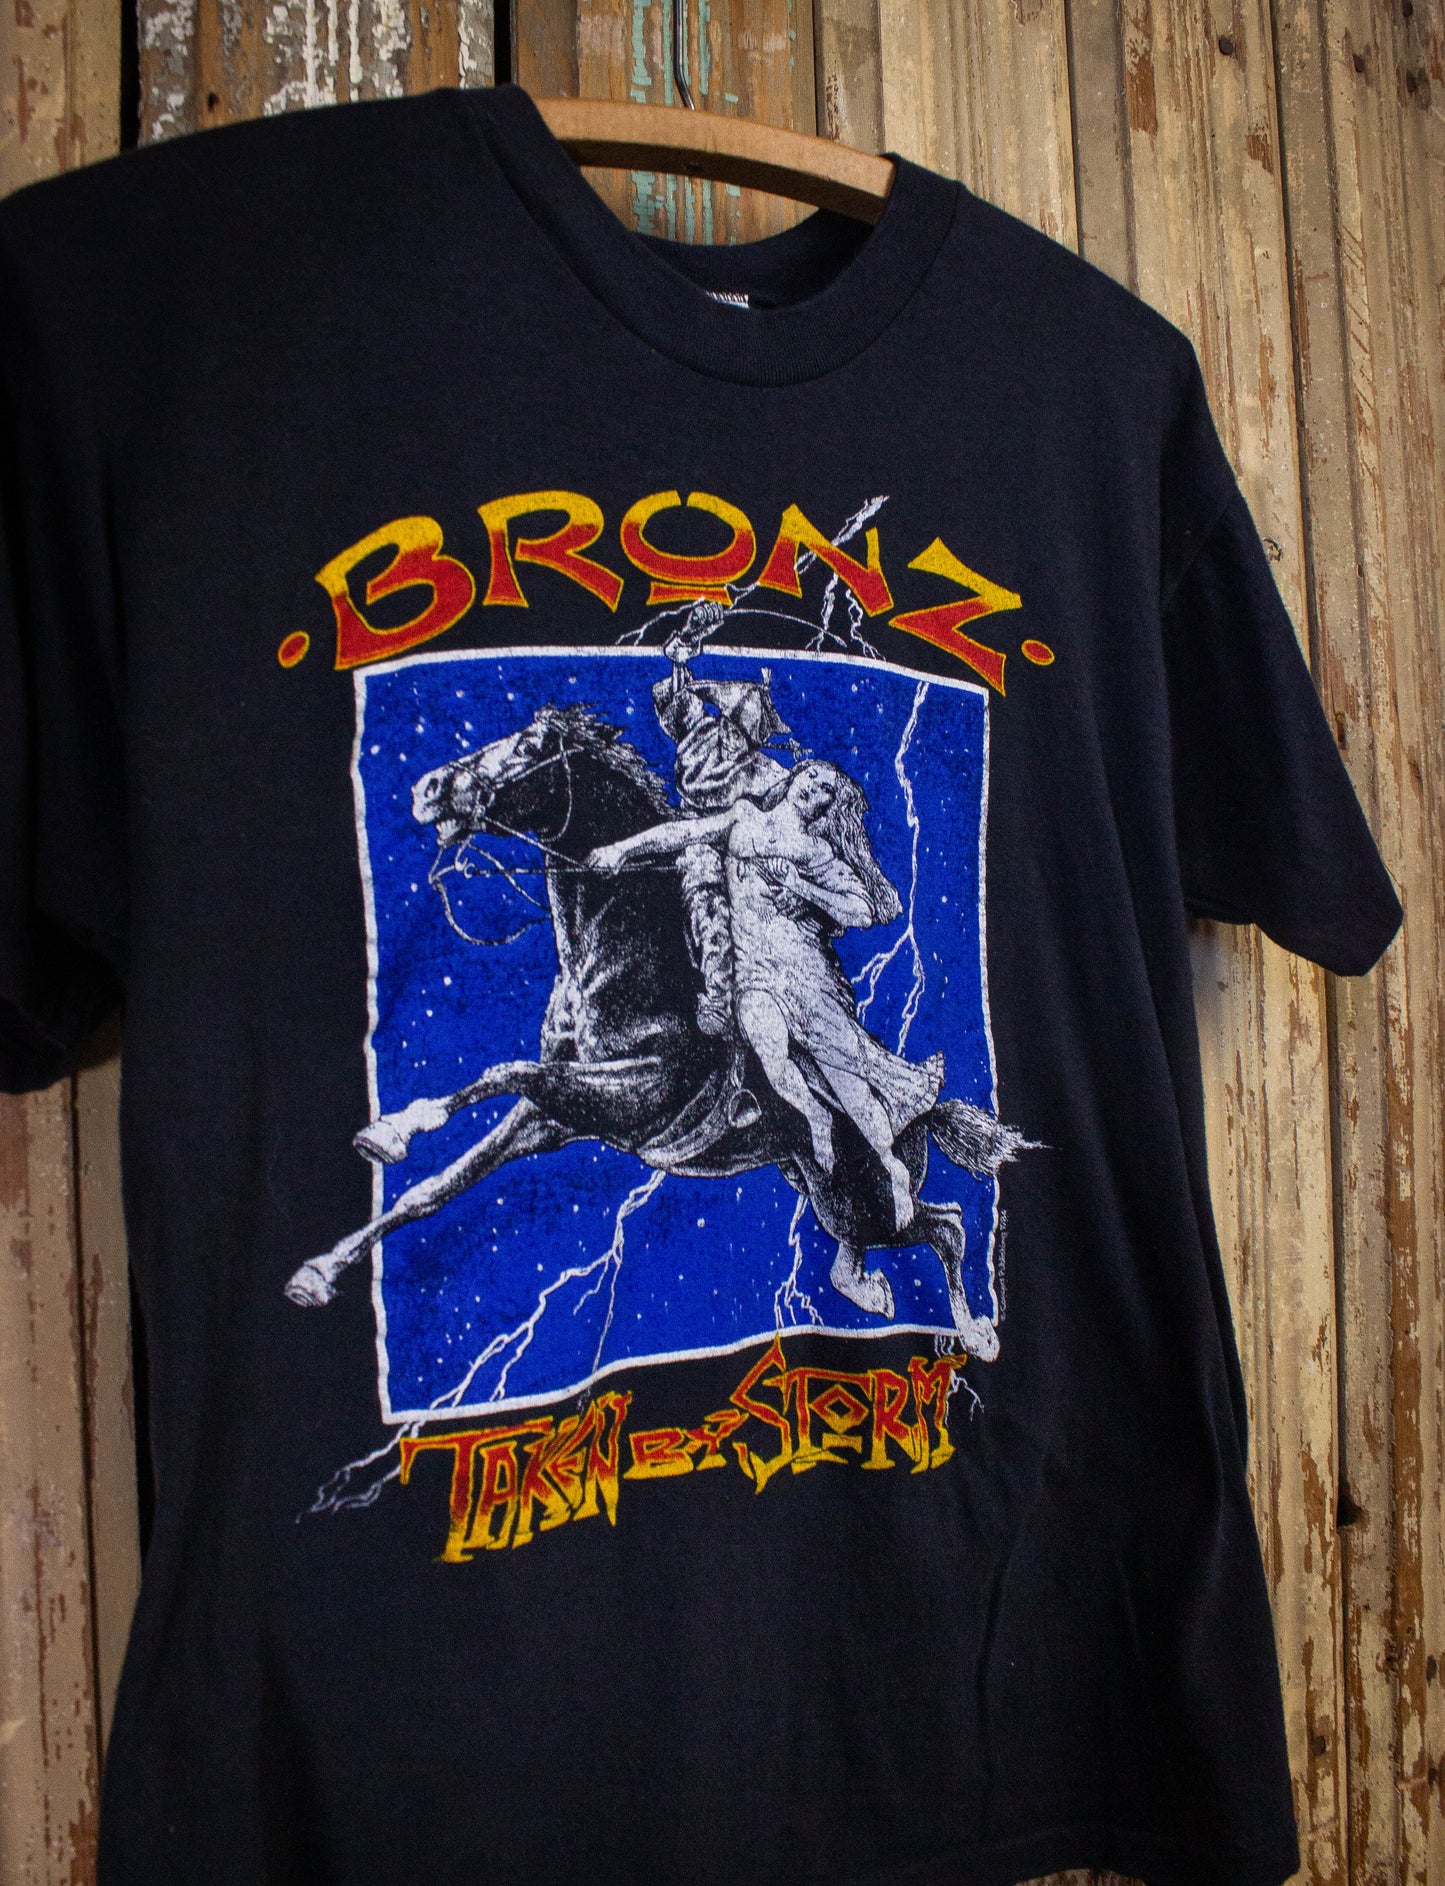 Vintage Bronz Taken By Storm Concert T Shirt 1984 Black